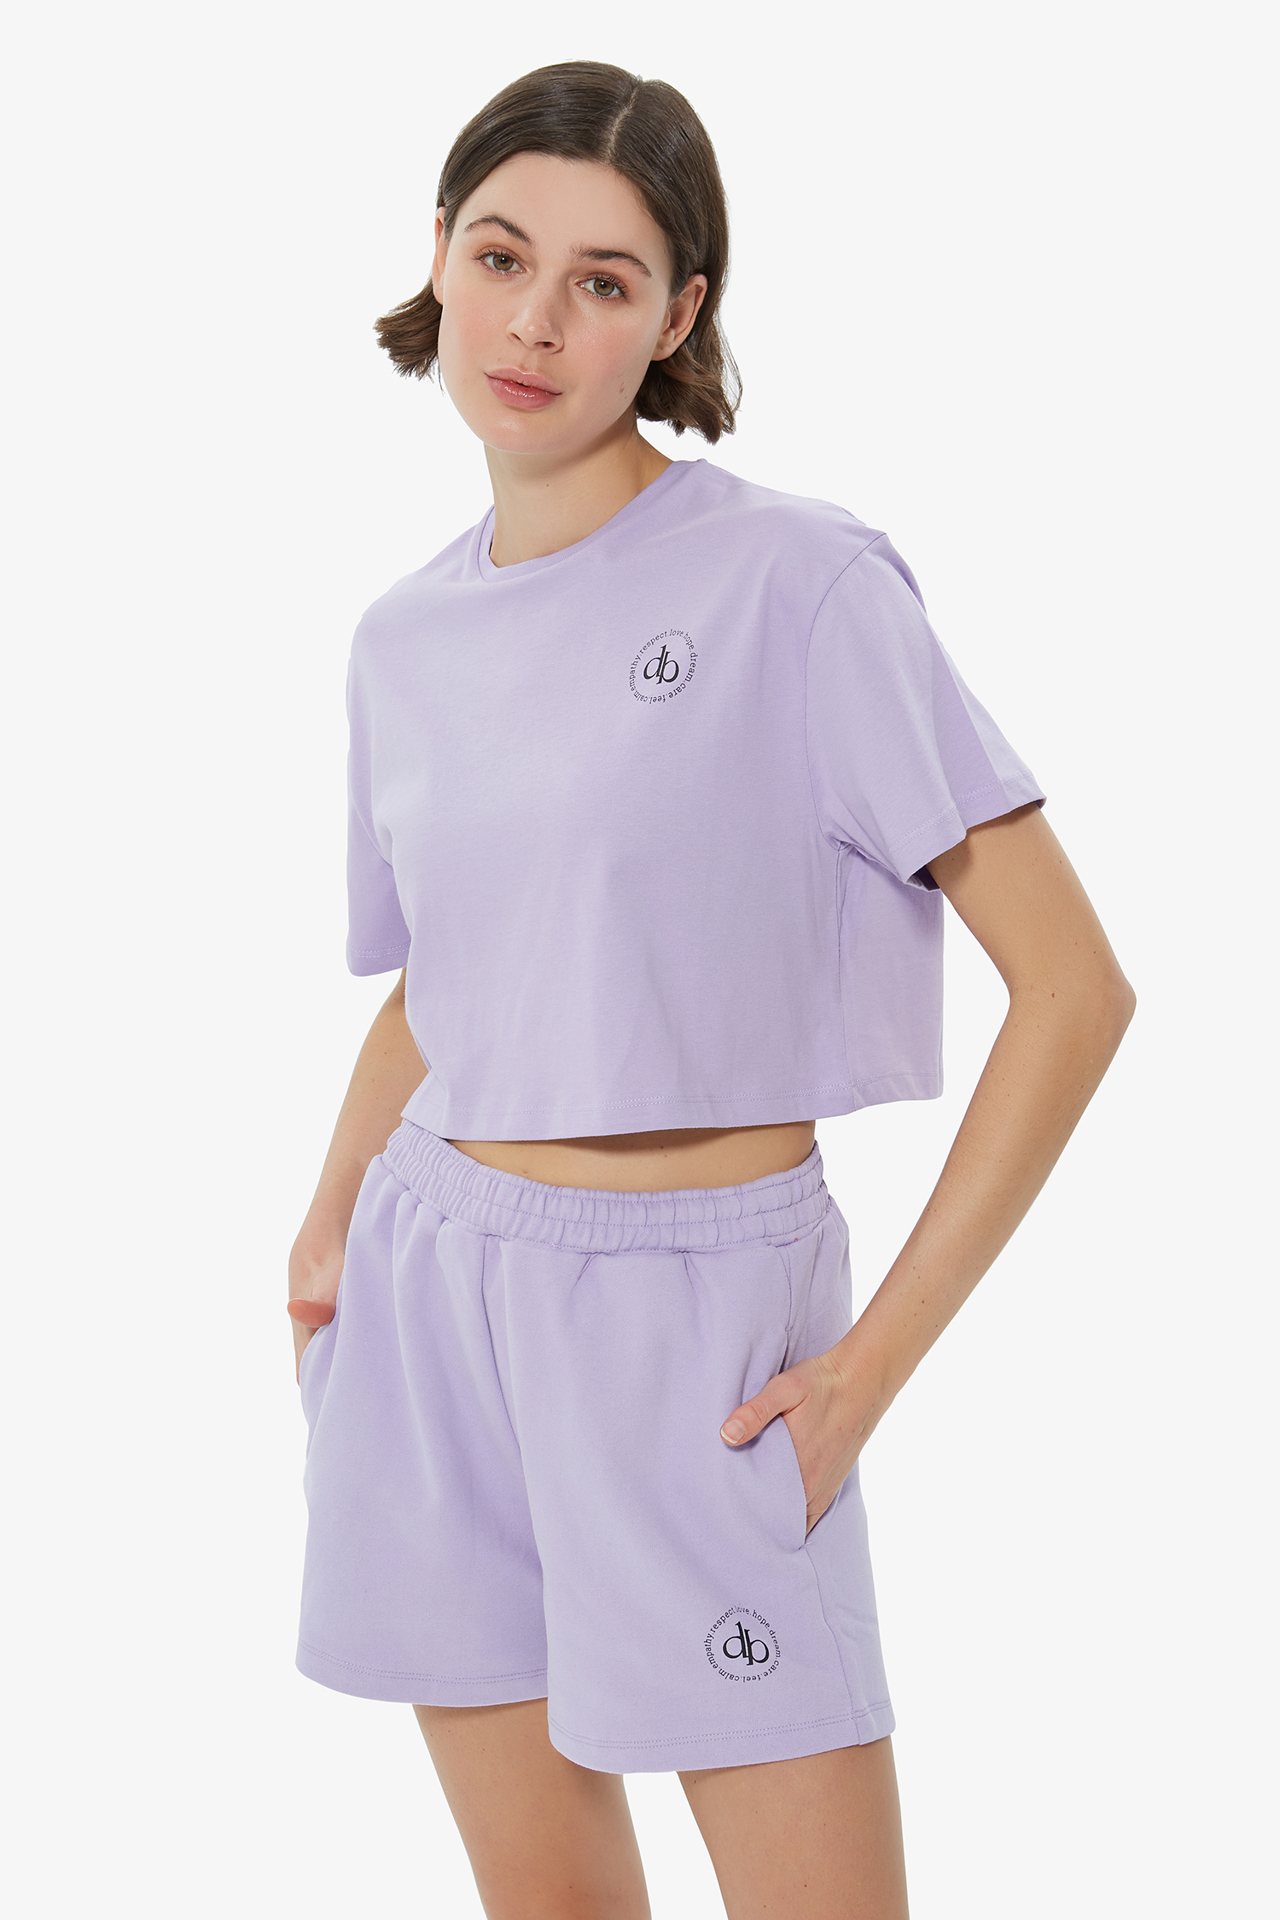 Dahlia Bianca  Cropped T-shirt - Lilac - Tshirt